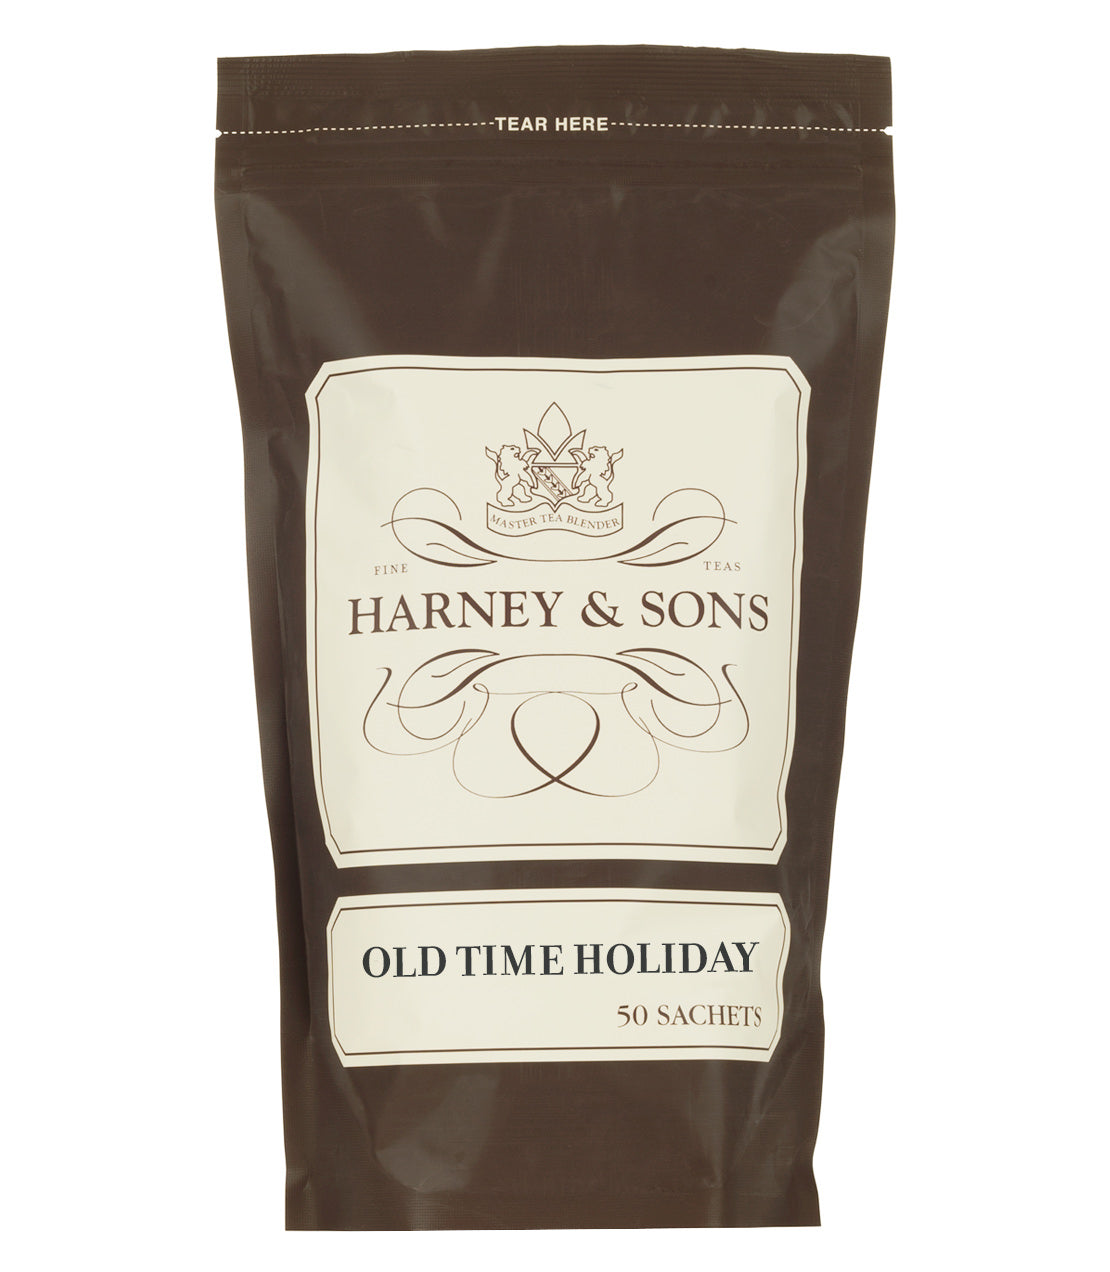 Old Time Holiday, Bag of 50 Sachets - Sachets Bag of 50 Sachets - Harney & Sons Fine Teas